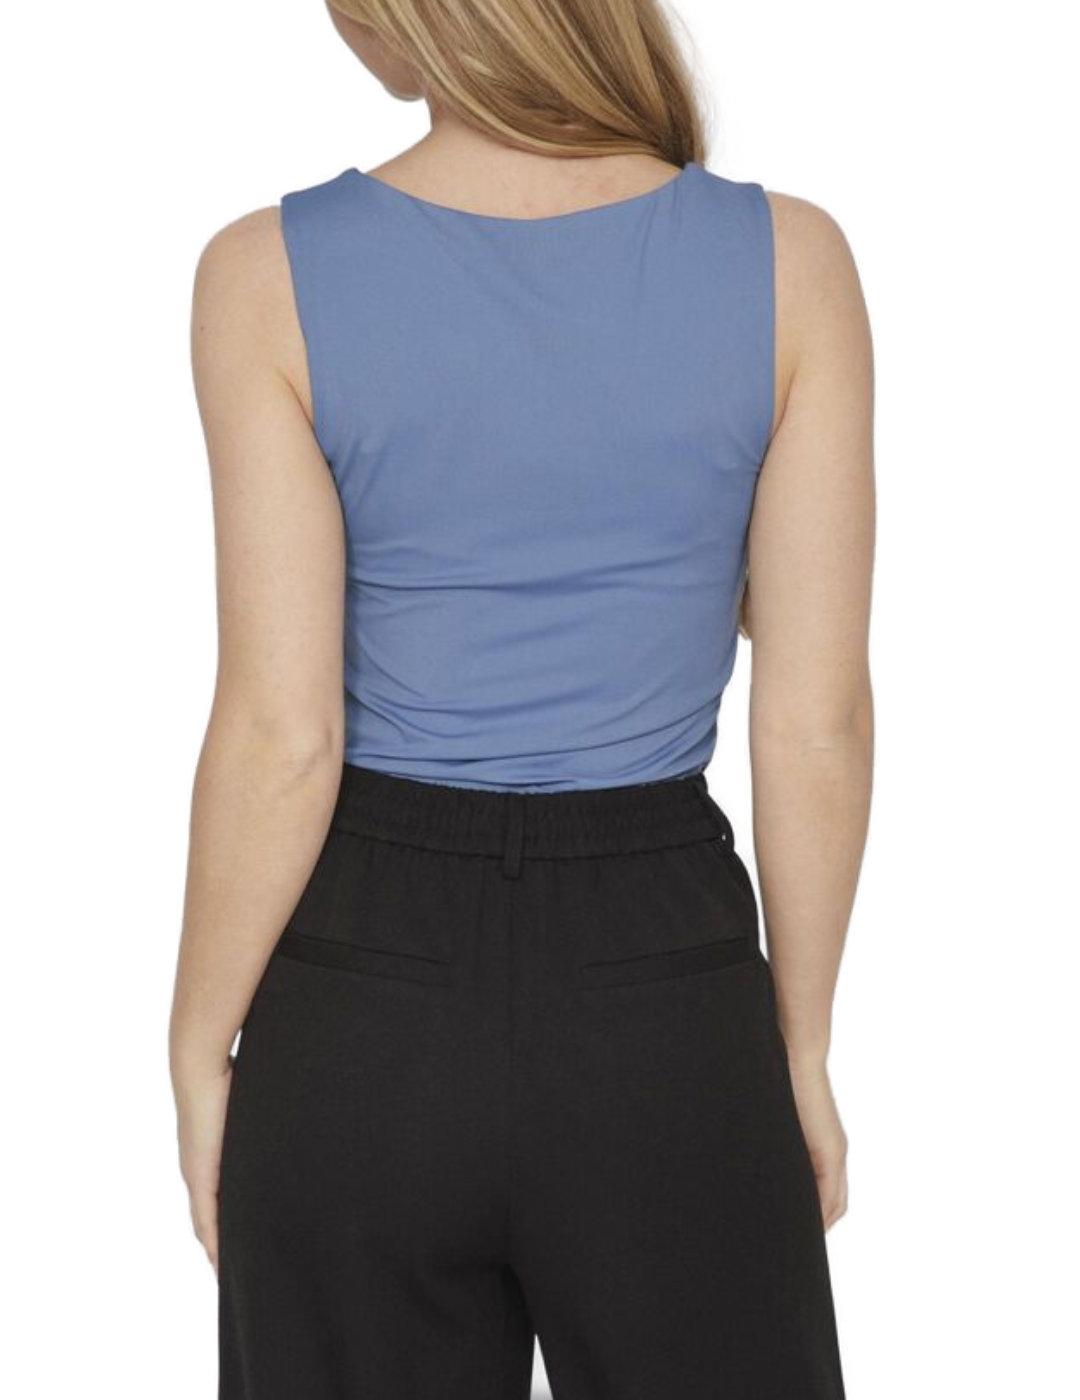 Camiseta Vila Kenza color azul de tirante ancho para mujer